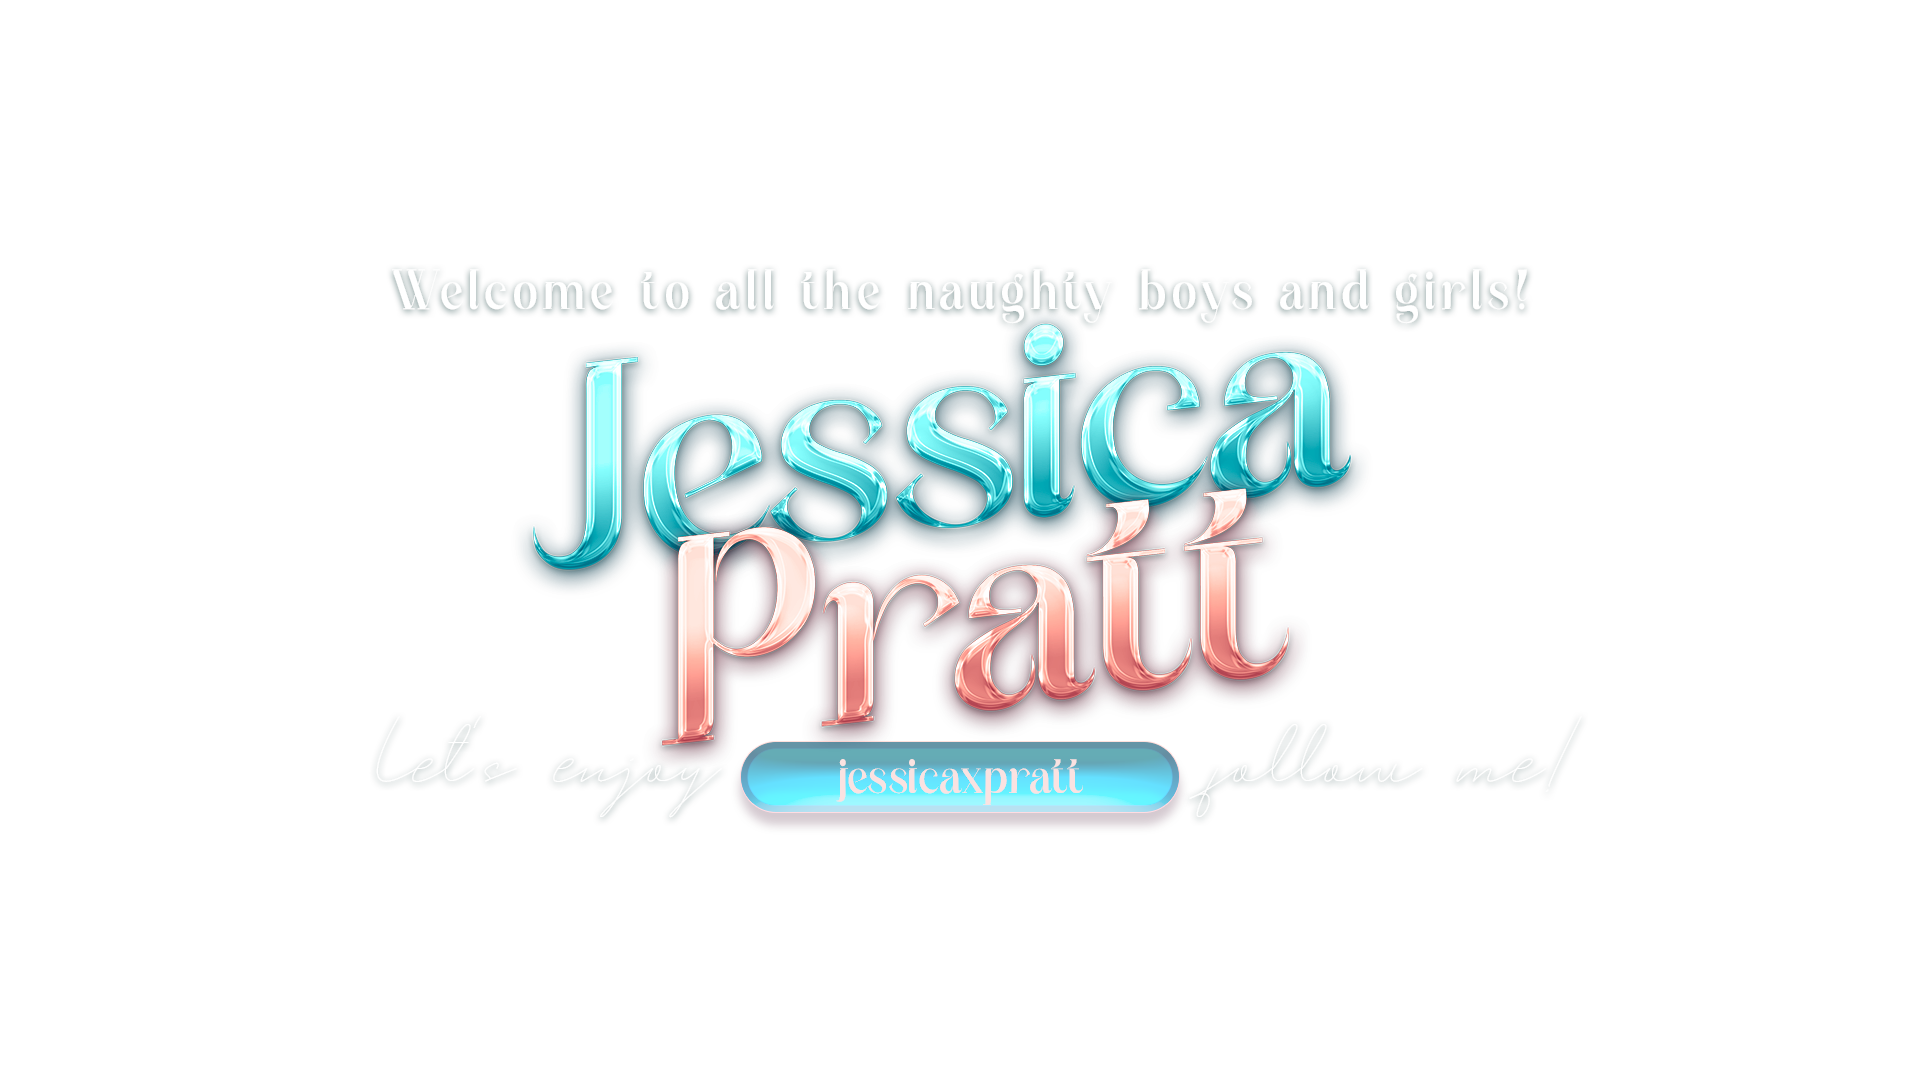 JessicaPratt . image: 1